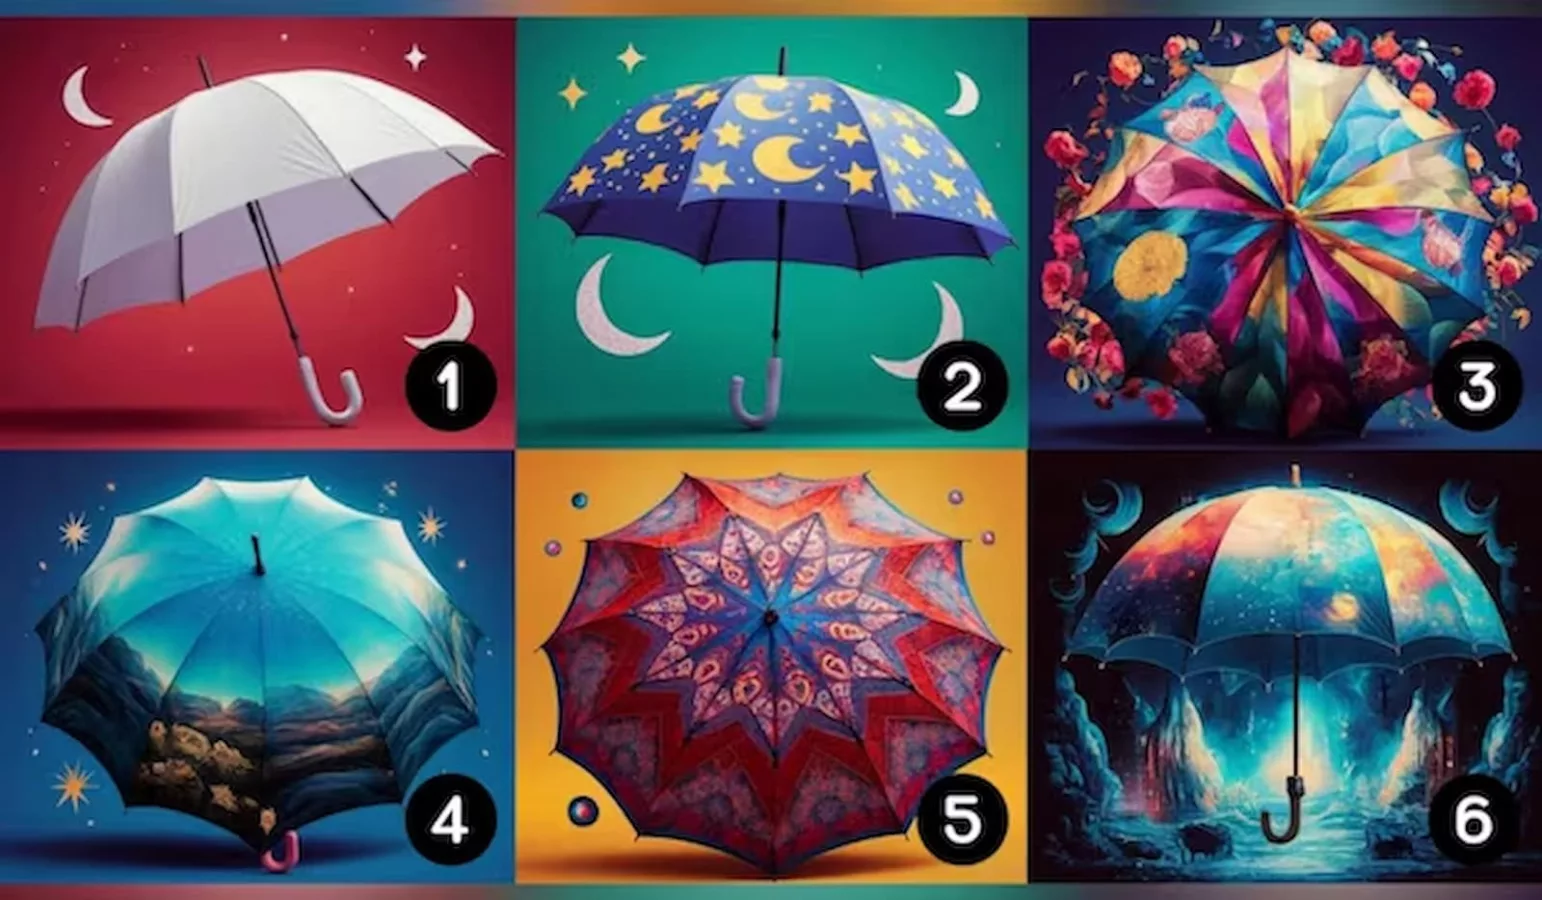 اختر إحدى المظلات الموجودة في الصورة لتعرف إذا كنت شخصًا أنيقًا أم لا